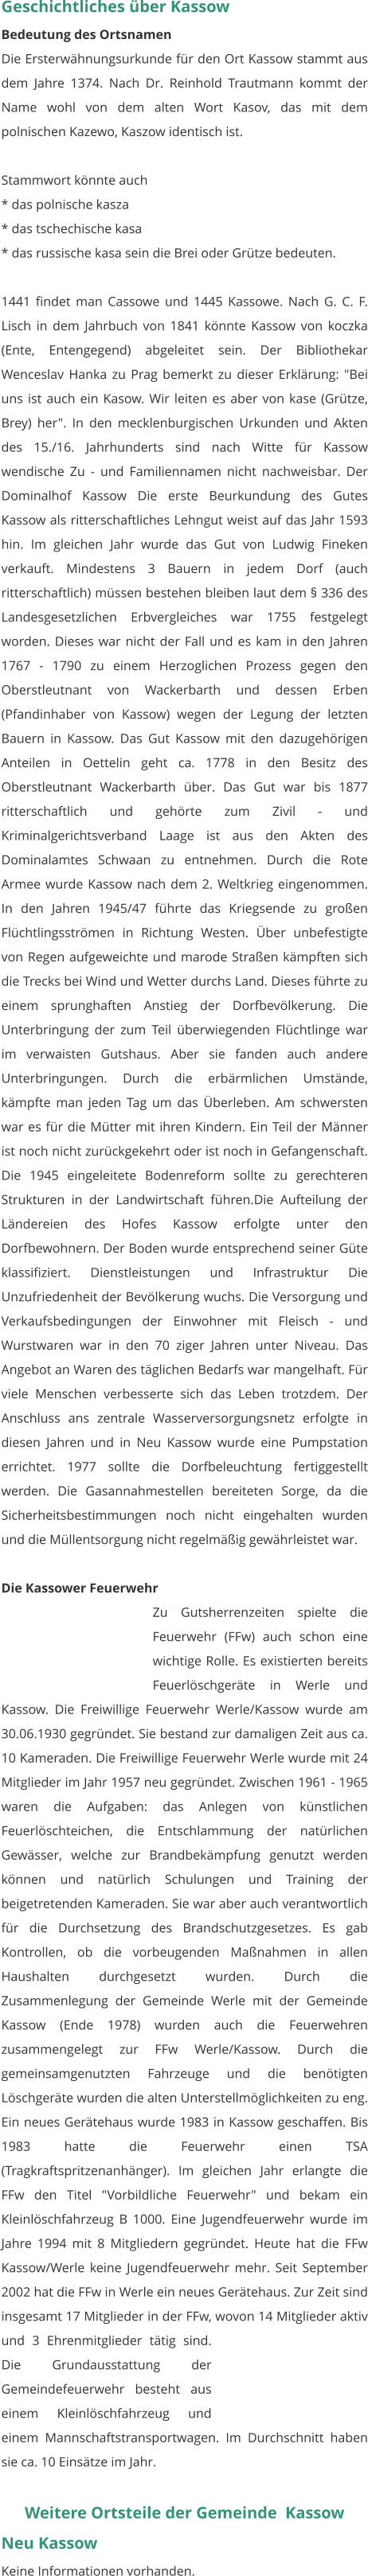 Geschichtliches über Kassow Bedeutung des Ortsnamen Die Ersterwähnungsurkunde für den Ort Kassow stammt aus dem Jahre 1374. Nach Dr. Reinhold Trautmann kommt der Name wohl von dem alten Wort Kasov, das mit dem polnischen Kazewo, Kaszow identisch ist.  Stammwort könnte auch * das polnische kasza * das tschechische kasa * das russische kasa sein die Brei oder Grütze bedeuten.  1441 findet man Cassowe und 1445 Kassowe. Nach G. C. F. Lisch in dem Jahrbuch von 1841 könnte Kassow von koczka (Ente, Entengegend) abgeleitet sein. Der Bibliothekar Wenceslav Hanka zu Prag bemerkt zu dieser Erklärung: "Bei uns ist auch ein Kasow. Wir leiten es aber von kase (Grütze, Brey) her". In den mecklenburgischen Urkunden und Akten des 15./16. Jahrhunderts sind nach Witte für Kassow wendische Zu - und Familiennamen nicht nachweisbar. Der Dominalhof Kassow Die erste Beurkundung des Gutes Kassow als ritterschaftliches Lehngut weist auf das Jahr 1593 hin. Im gleichen Jahr wurde das Gut von Ludwig Fineken verkauft. Mindestens 3 Bauern in jedem Dorf (auch ritterschaftlich) müssen bestehen bleiben laut dem § 336 des Landesgesetzlichen Erbvergleiches war 1755 festgelegt worden. Dieses war nicht der Fall und es kam in den Jahren 1767 - 1790 zu einem Herzoglichen Prozess gegen den Oberstleutnant von Wackerbarth und dessen Erben (Pfandinhaber von Kassow) wegen der Legung der letzten Bauern in Kassow. Das Gut Kassow mit den dazugehörigen Anteilen in Oettelin geht ca. 1778 in den Besitz des Oberstleutnant Wackerbarth über. Das Gut war bis 1877 ritterschaftlich und gehörte zum Zivil - und Kriminalgerichtsverband Laage ist aus den Akten des Dominalamtes Schwaan zu entnehmen. Durch die Rote Armee wurde Kassow nach dem 2. Weltkrieg eingenommen. In den Jahren 1945/47 führte das Kriegsende zu großen Flüchtlingsströmen in Richtung Westen. Über unbefestigte von Regen aufgeweichte und marode Straßen kämpften sich die Trecks bei Wind und Wetter durchs Land. Dieses führte zu einem sprunghaften Anstieg der Dorfbevölkerung. Die Unterbringung der zum Teil überwiegenden Flüchtlinge war im verwaisten Gutshaus. Aber sie fanden auch andere Unterbringungen. Durch die erbärmlichen Umstände, kämpfte man jeden Tag um das Überleben. Am schwersten war es für die Mütter mit ihren Kindern. Ein Teil der Männer ist noch nicht zurückgekehrt oder ist noch in Gefangenschaft. Die 1945 eingeleitete Bodenreform sollte zu gerechteren Strukturen in der Landwirtschaft führen.Die Aufteilung der Ländereien des Hofes Kassow erfolgte unter den Dorfbewohnern. Der Boden wurde entsprechend seiner Güte klassifiziert. Dienstleistungen und Infrastruktur Die Unzufriedenheit der Bevölkerung wuchs. Die Versorgung und Verkaufsbedingungen der Einwohner mit Fleisch - und Wurstwaren war in den 70 ziger Jahren unter Niveau. Das Angebot an Waren des täglichen Bedarfs war mangelhaft. Für viele Menschen verbesserte sich das Leben trotzdem. Der Anschluss ans zentrale Wasserversorgungsnetz erfolgte in diesen Jahren und in Neu Kassow wurde eine Pumpstation errichtet. 1977 sollte die Dorfbeleuchtung fertiggestellt werden. Die Gasannahmestellen bereiteten Sorge, da die Sicherheitsbestimmungen noch nicht eingehalten wurden und die Müllentsorgung nicht regelmäßig gewährleistet war.  Die Kassower Feuerwehr Zu Gutsherrenzeiten spielte die Feuerwehr (FFw) auch schon eine wichtige Rolle. Es existierten bereits Feuerlöschgeräte in Werle und Kassow. Die Freiwillige Feuerwehr Werle/Kassow wurde am 30.06.1930 gegründet. Sie bestand zur damaligen Zeit aus ca. 10 Kameraden. Die Freiwillige Feuerwehr Werle wurde mit 24 Mitglieder im Jahr 1957 neu gegründet. Zwischen 1961 - 1965 waren die Aufgaben: das Anlegen von künstlichen Feuerlöschteichen, die Entschlammung der natürlichen Gewässer, welche zur Brandbekämpfung genutzt werden können und natürlich Schulungen und Training der beigetretenden Kameraden. Sie war aber auch verantwortlich für die Durchsetzung des Brandschutzgesetzes. Es gab Kontrollen, ob die vorbeugenden Maßnahmen in allen Haushalten durchgesetzt wurden. Durch die Zusammenlegung der Gemeinde Werle mit der Gemeinde Kassow (Ende 1978) wurden auch die Feuerwehren zusammengelegt zur FFw Werle/Kassow. Durch die gemeinsamgenutzten Fahrzeuge und die benötigten Löschgeräte wurden die alten Unterstellmöglichkeiten zu eng. Ein neues Gerätehaus wurde 1983 in Kassow geschaffen. Bis 1983 hatte die Feuerwehr einen TSA (Tragkraftspritzenanhänger). Im gleichen Jahr erlangte die FFw den Titel "Vorbildliche Feuerwehr" und bekam ein Kleinlöschfahrzeug B 1000. Eine Jugendfeuerwehr wurde im Jahre 1994 mit 8 Mitgliedern gegründet. Heute hat die FFw Kassow/Werle keine Jugendfeuerwehr mehr. Seit September 2002 hat die FFw in Werle ein neues Gerätehaus. Zur Zeit sind insgesamt 17 Mitglieder in der FFw, wovon 14 Mitglieder aktiv und 3 Ehrenmitglieder tätig sind. Die Grundausstattung der Gemeindefeuerwehr besteht aus einem Kleinlöschfahrzeug und einem Mannschaftstransportwagen. Im Durchschnitt haben sie ca. 10 Einsätze im Jahr.  Weitere Ortsteile der Gemeinde  Kassow Neu Kassow Keine Informationen vorhanden.